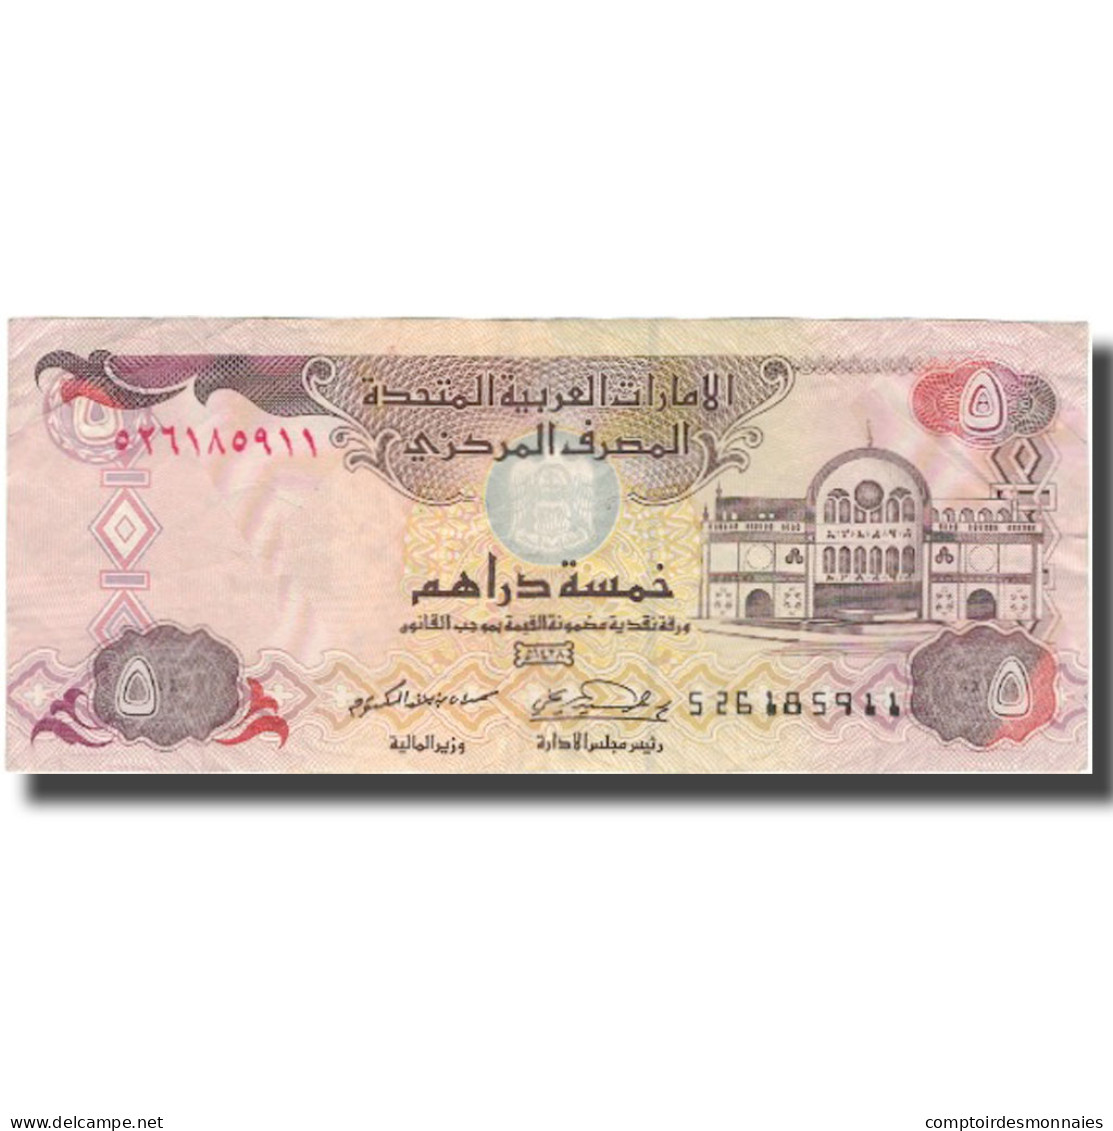 Billet, United Arab Emirates, 5 Dirhams, Undated (1982), KM:7a, TTB - United Arab Emirates